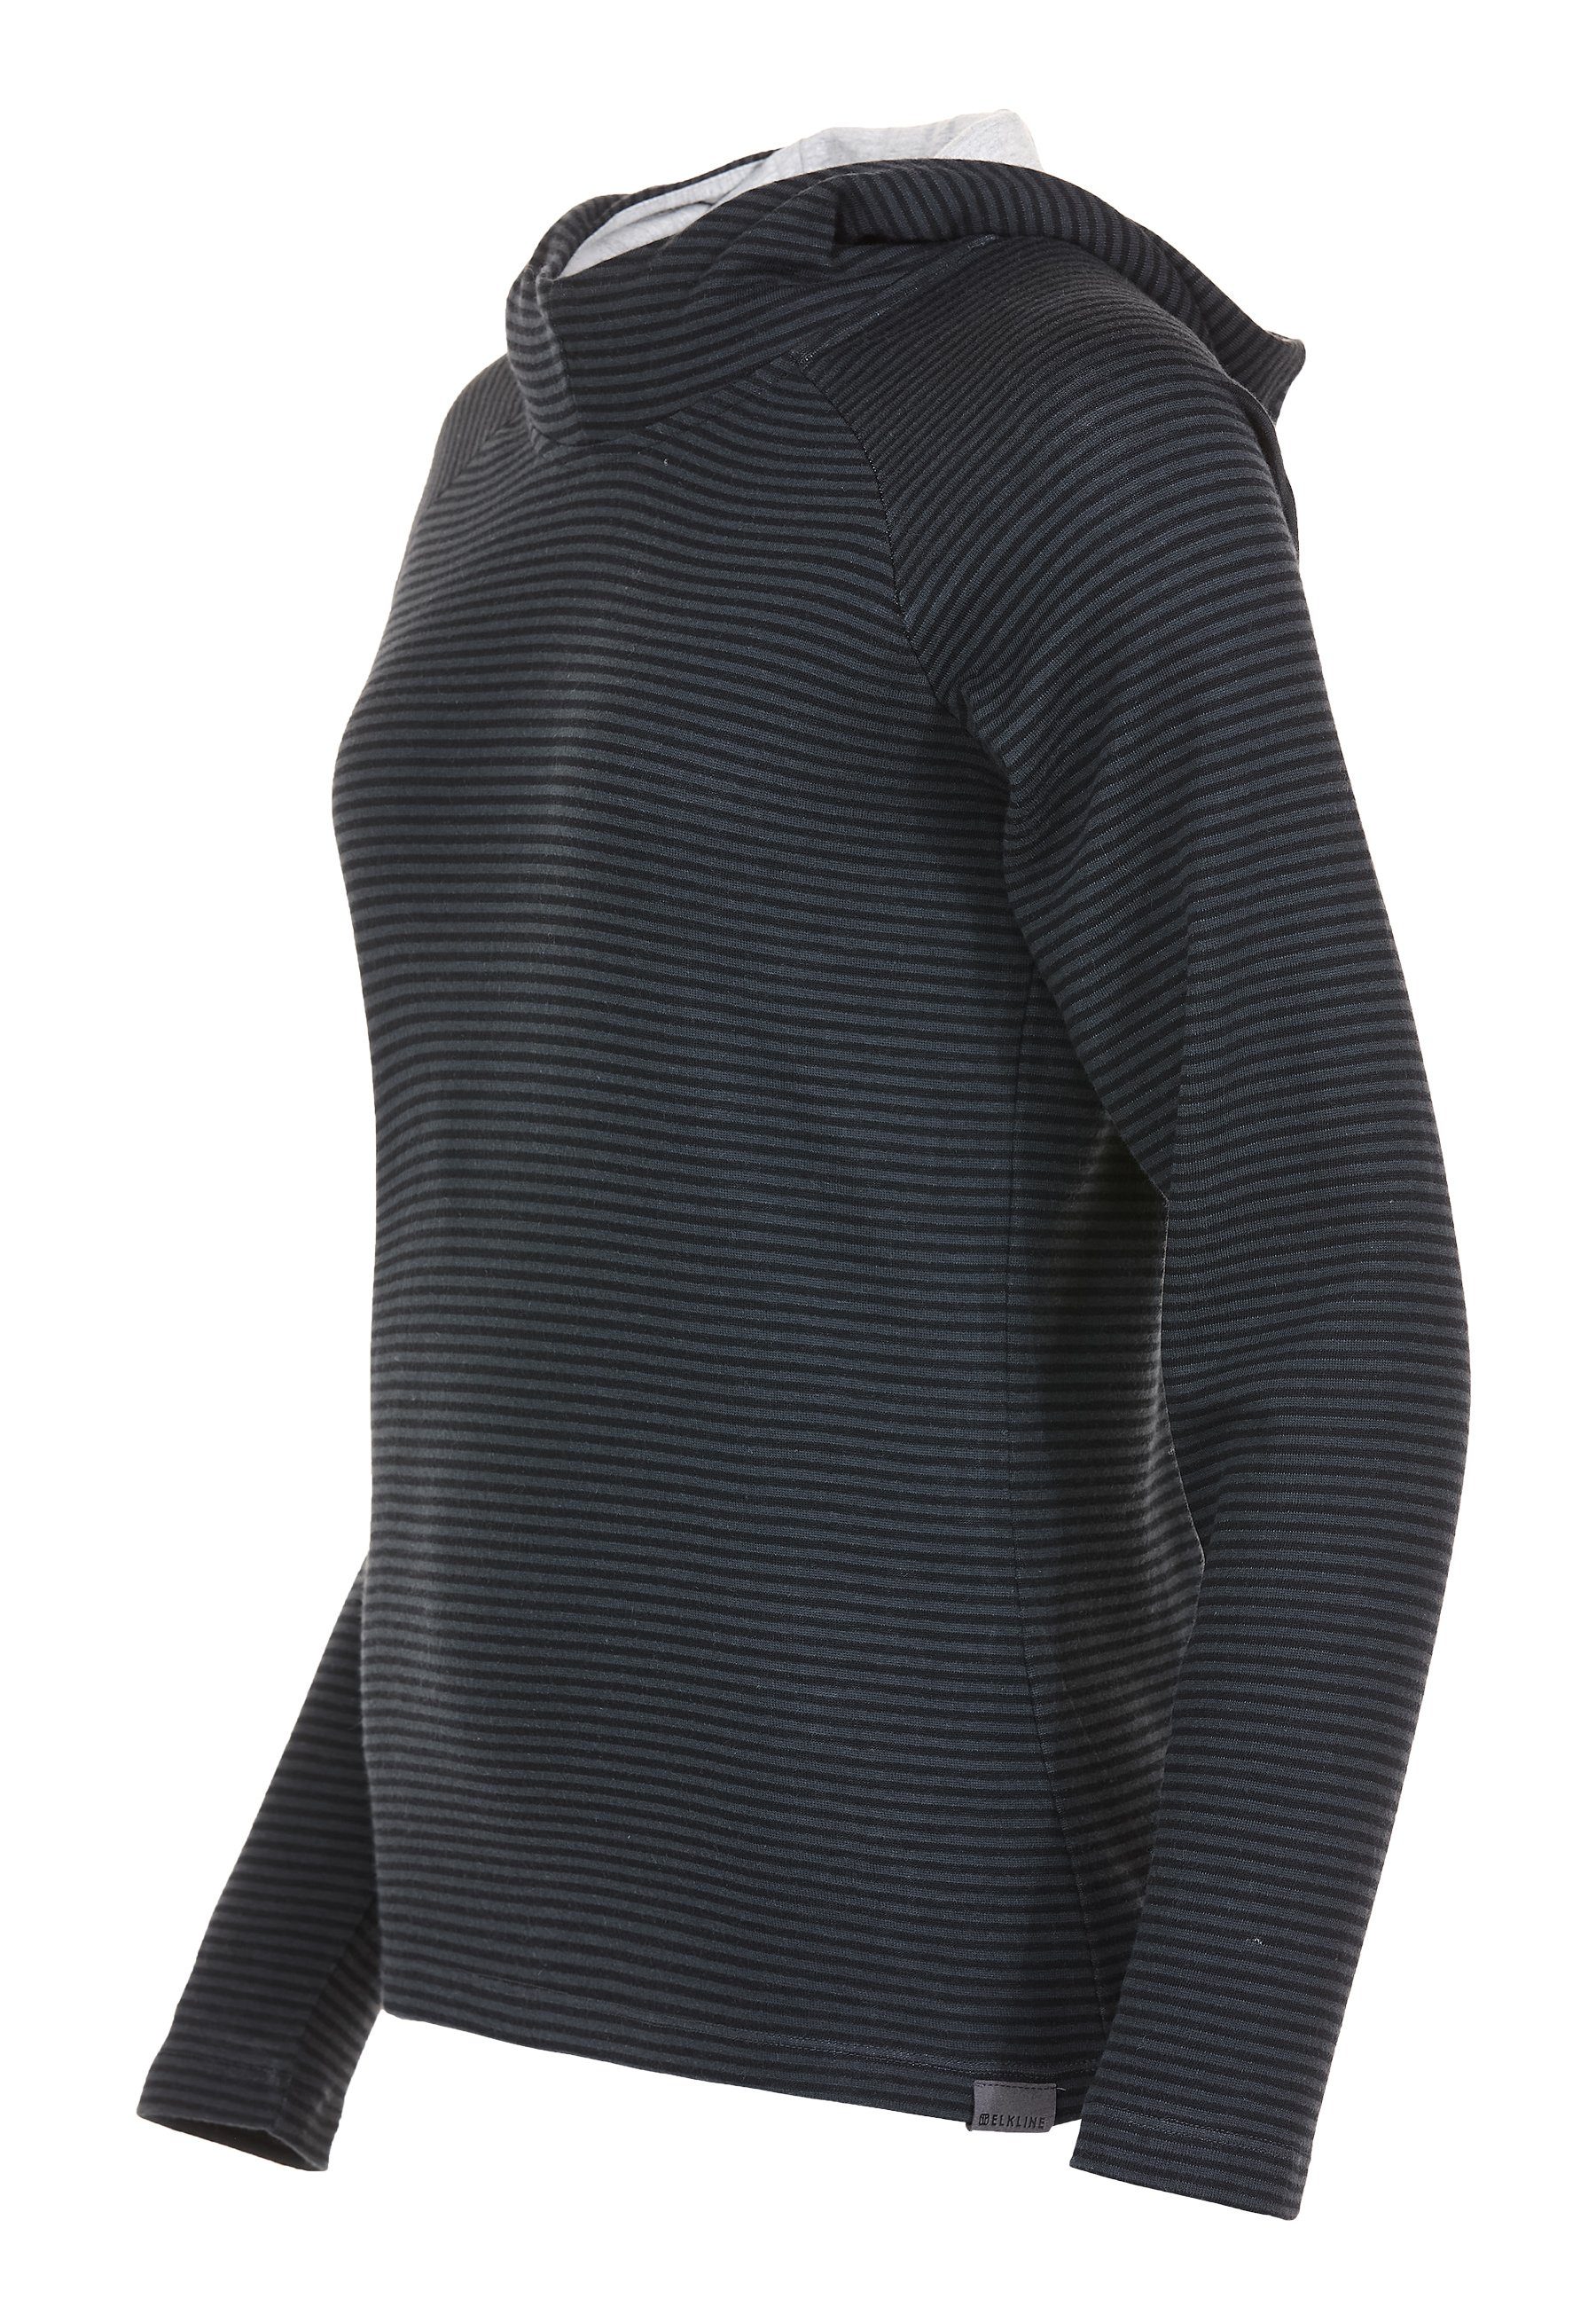 black Wetter anthra - Streifen Kapuzenpullover Sweater Hoodie tailliert leicht Elkline